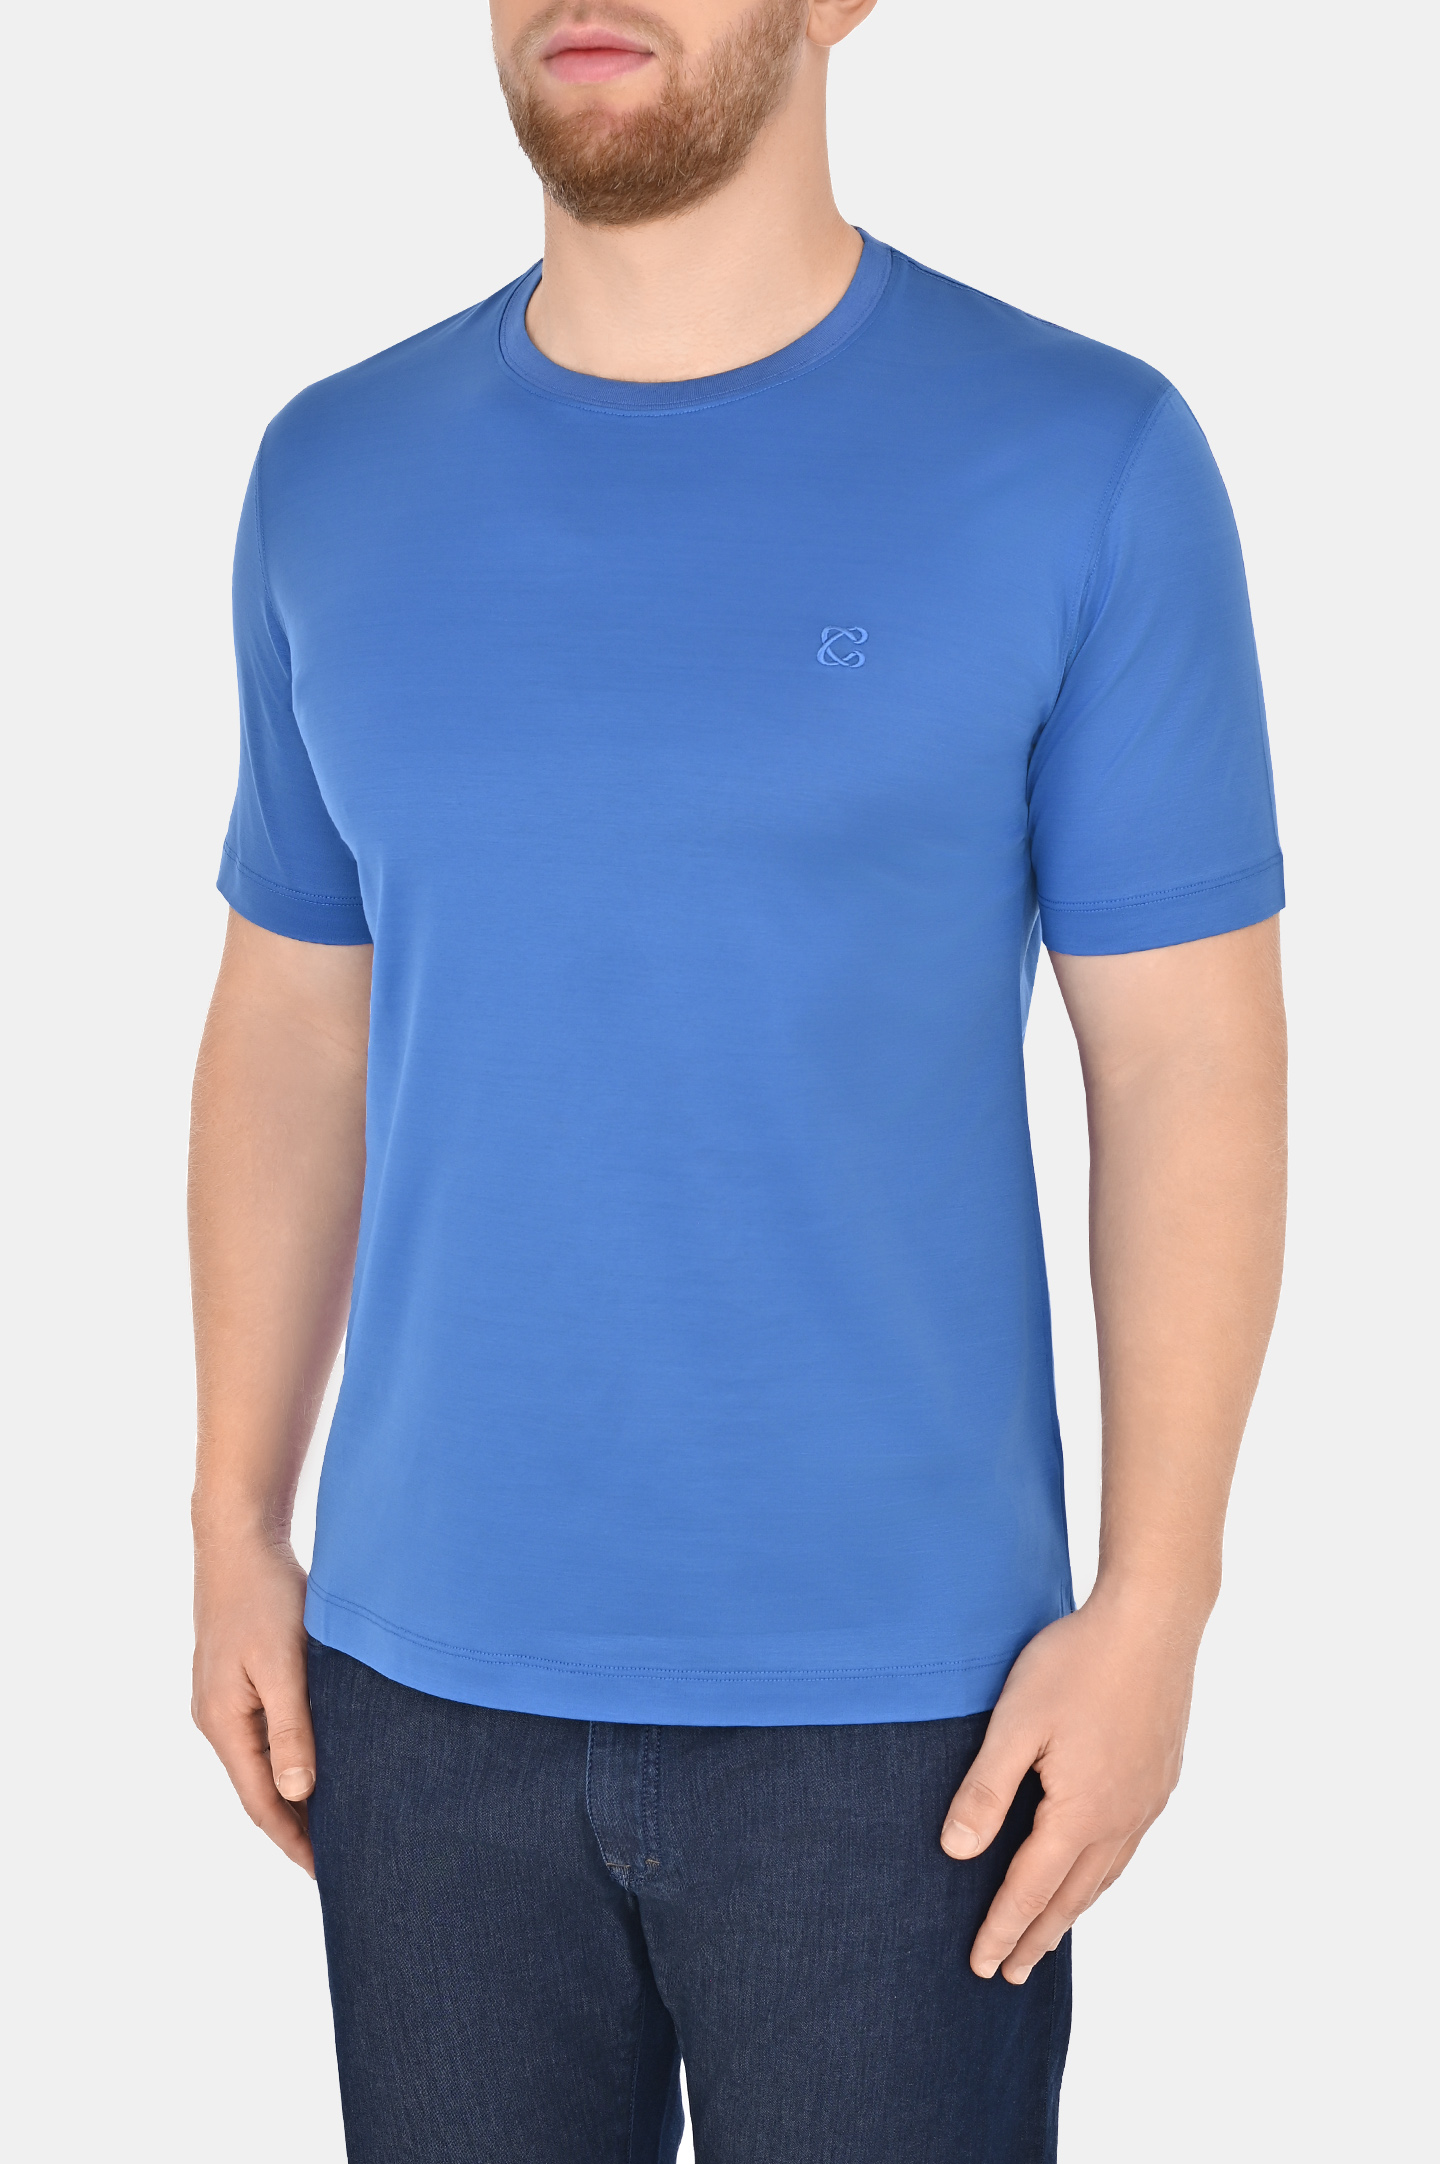 Базовая хлопковая футболка CASTANGIA DM66, цвет: Голубой, Мужской